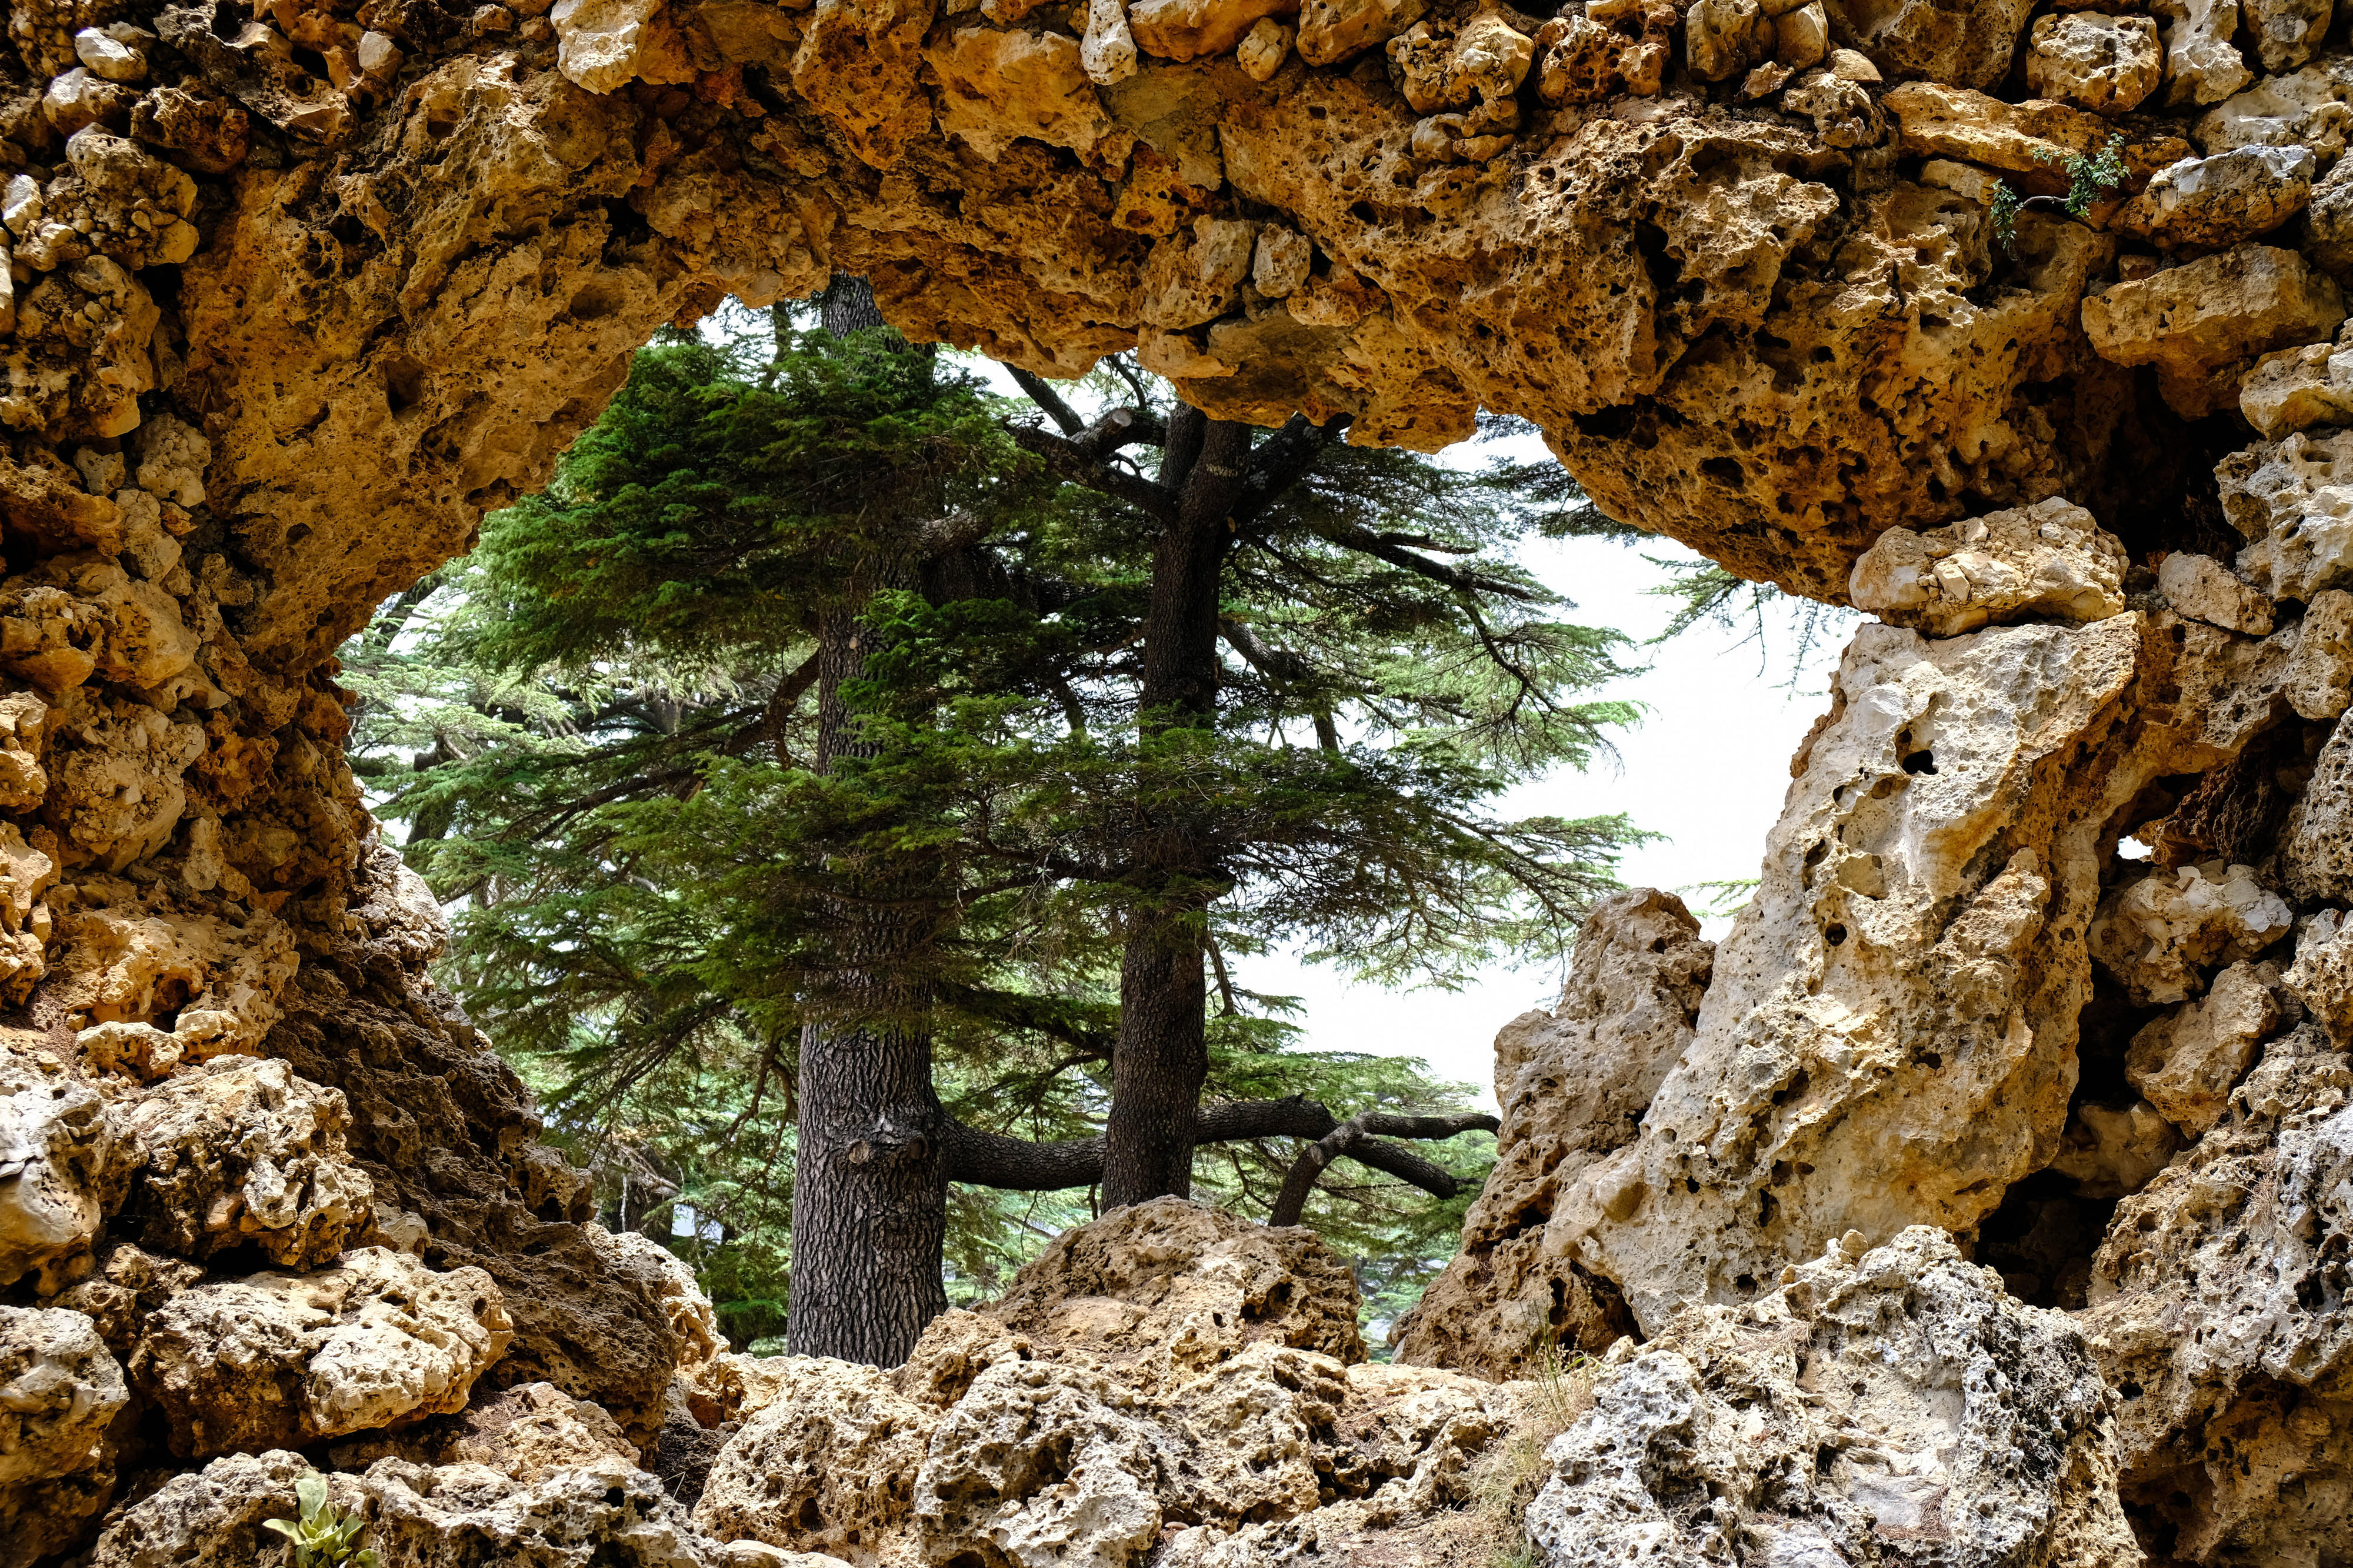 Cedars in Lebanon